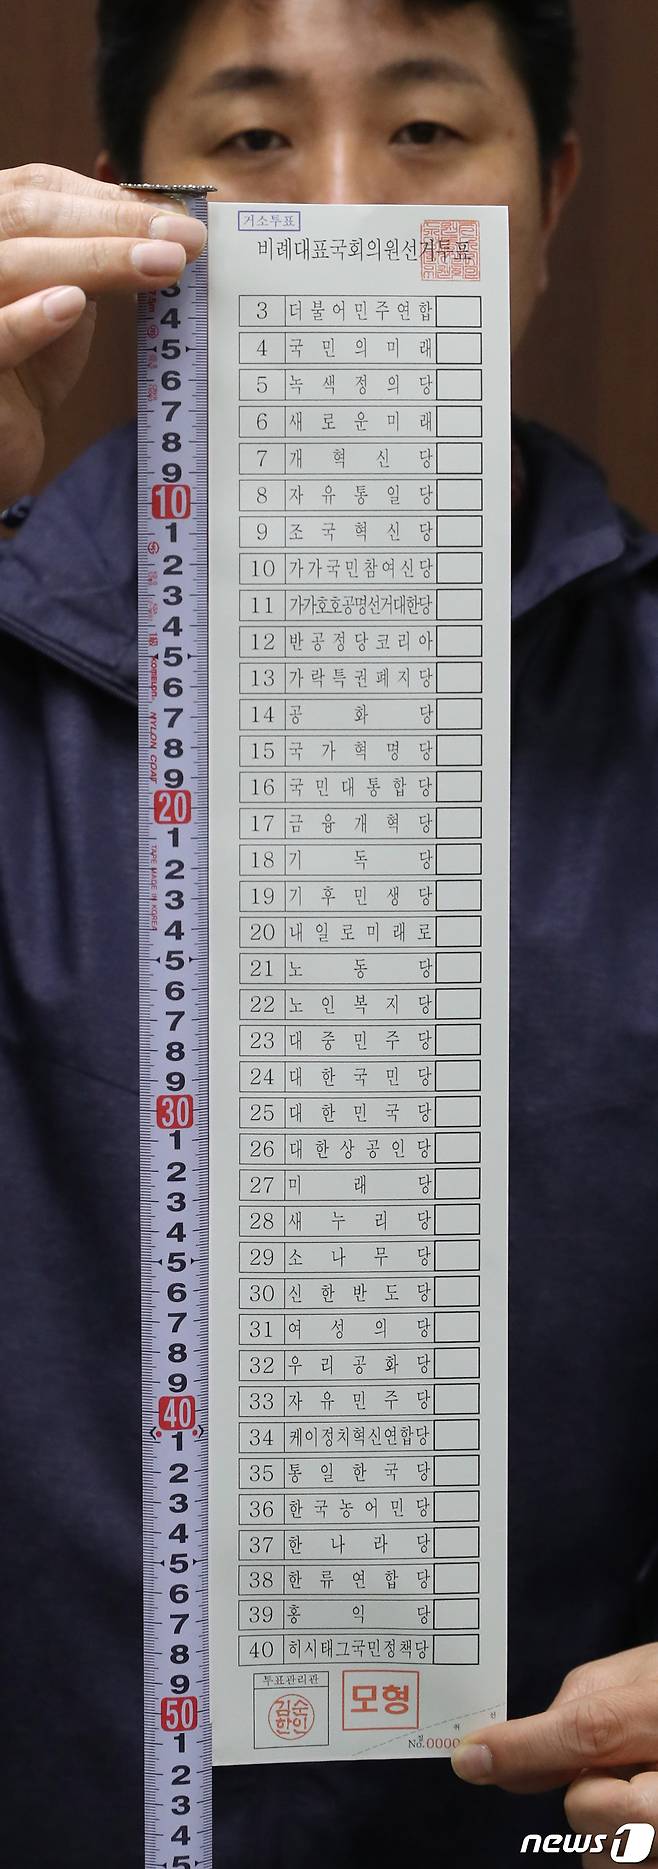 제22회 국회의원 선거에 비례대표 후보 등록을 신청한 정당은 38곳으로 비례대표 투표용지는 역대 최장인 51.7cm로 제작됐다. /뉴스1 ⓒNews1 김영운 기자